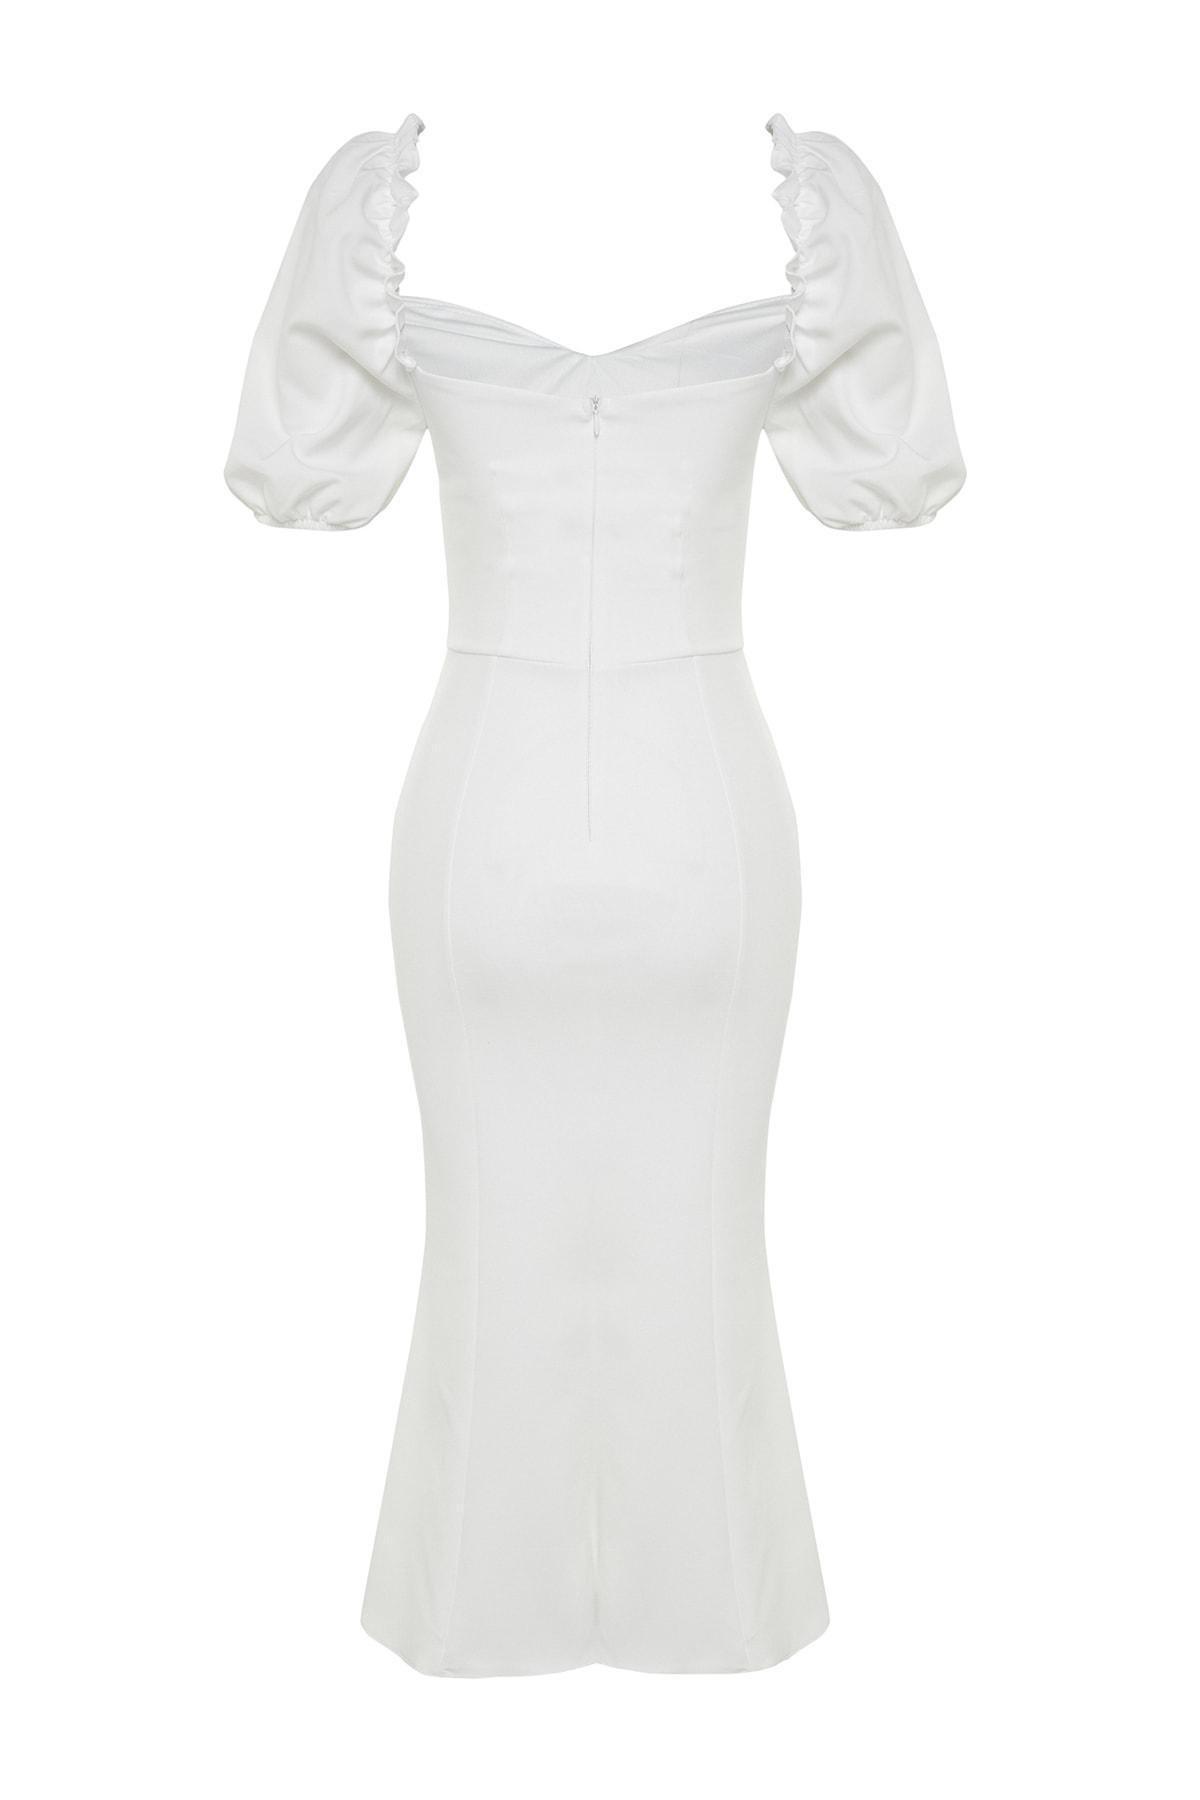 Trendyol - White Sweetheart Dress